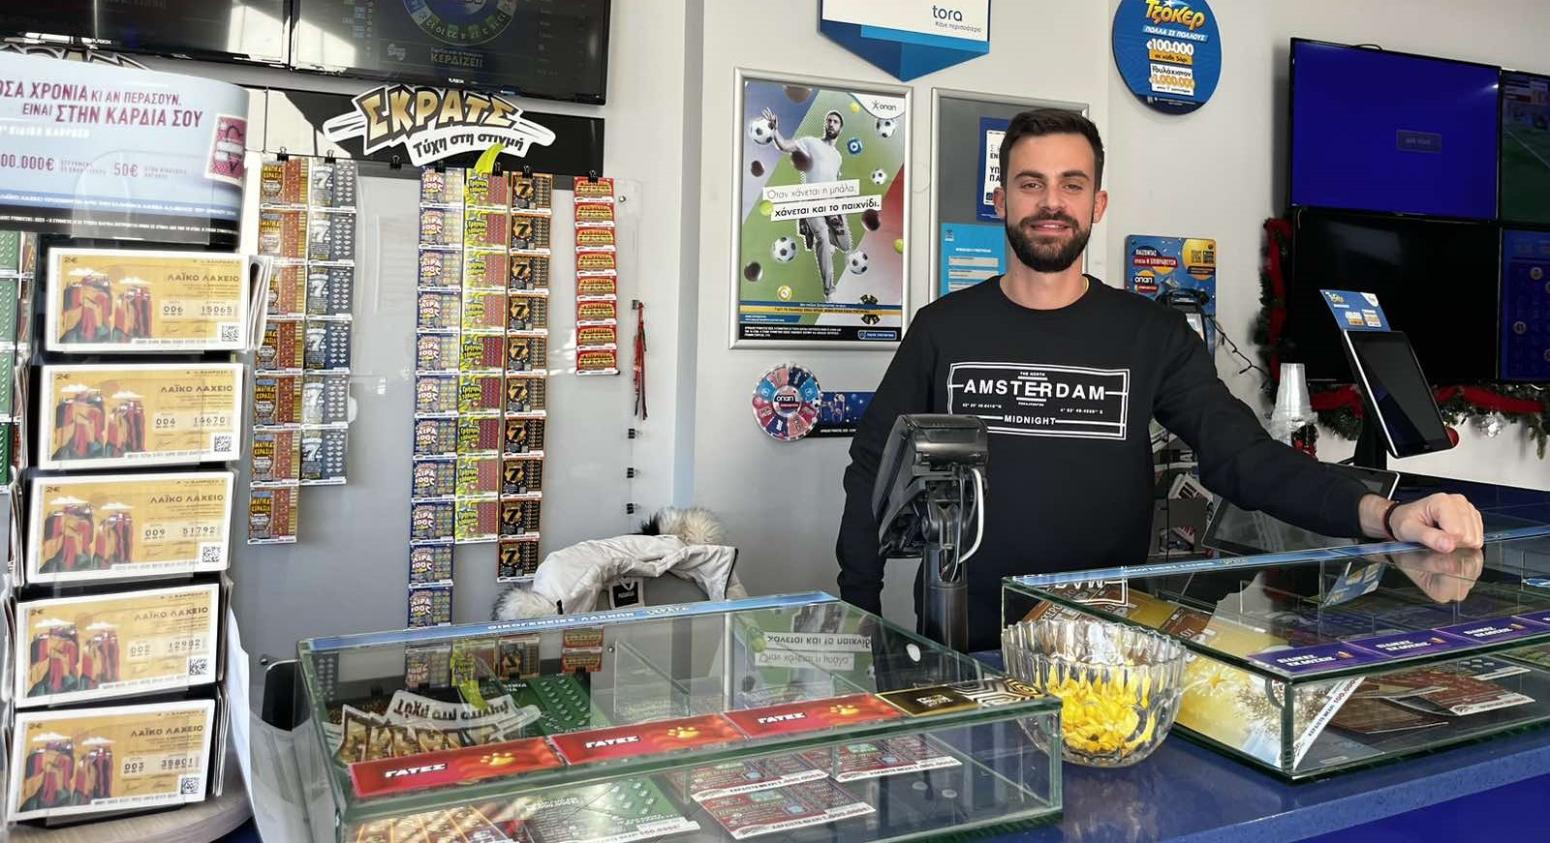 Πρωτοχρονιάτικος μποναμάς 10.000 ευρώ για τυχερό παίκτη του FreeWin σε κατάστημα ΟΠΑΠ